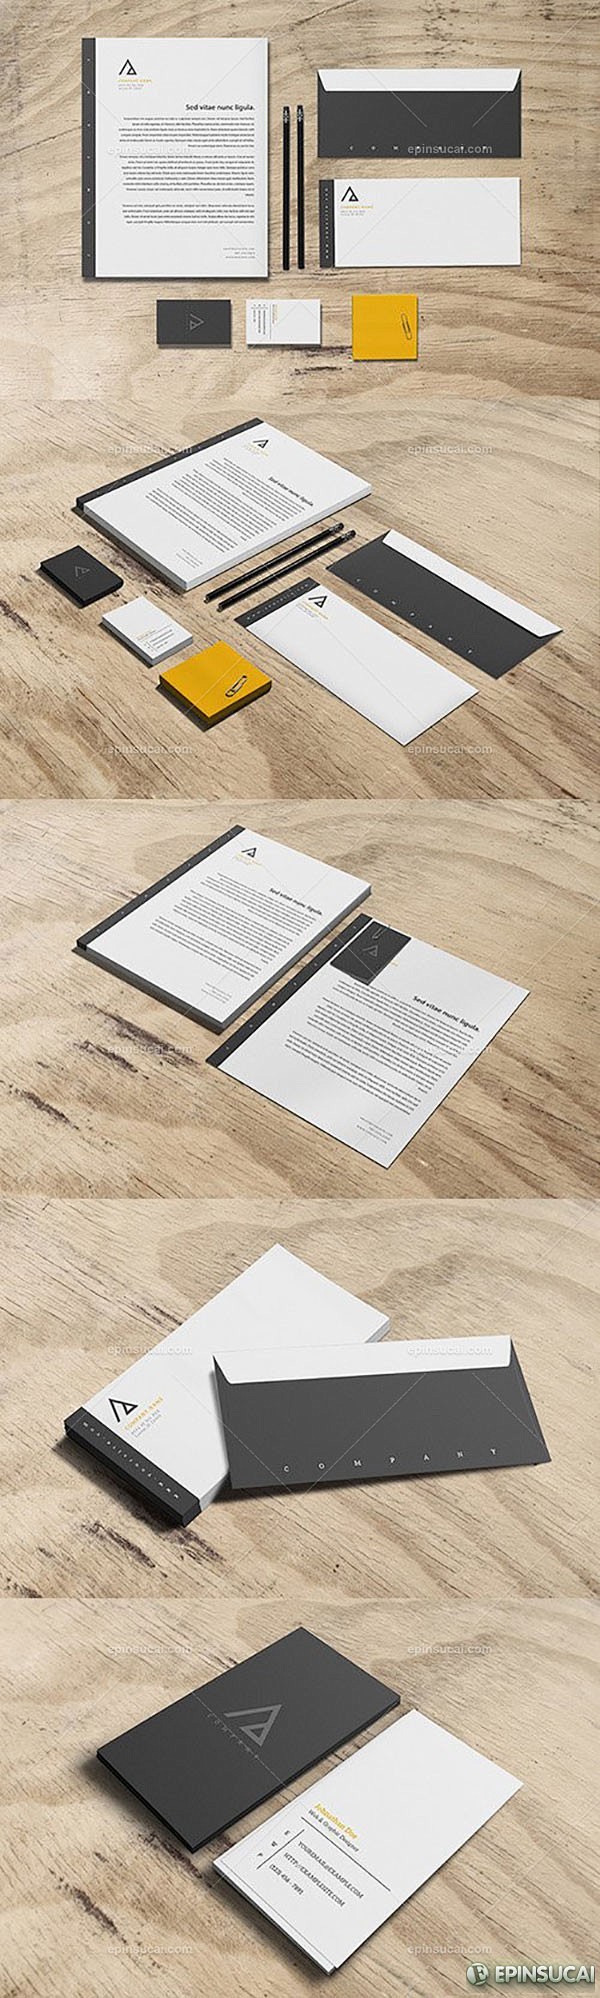 【新提醒】企业信纸,信封,名片设计PSD...